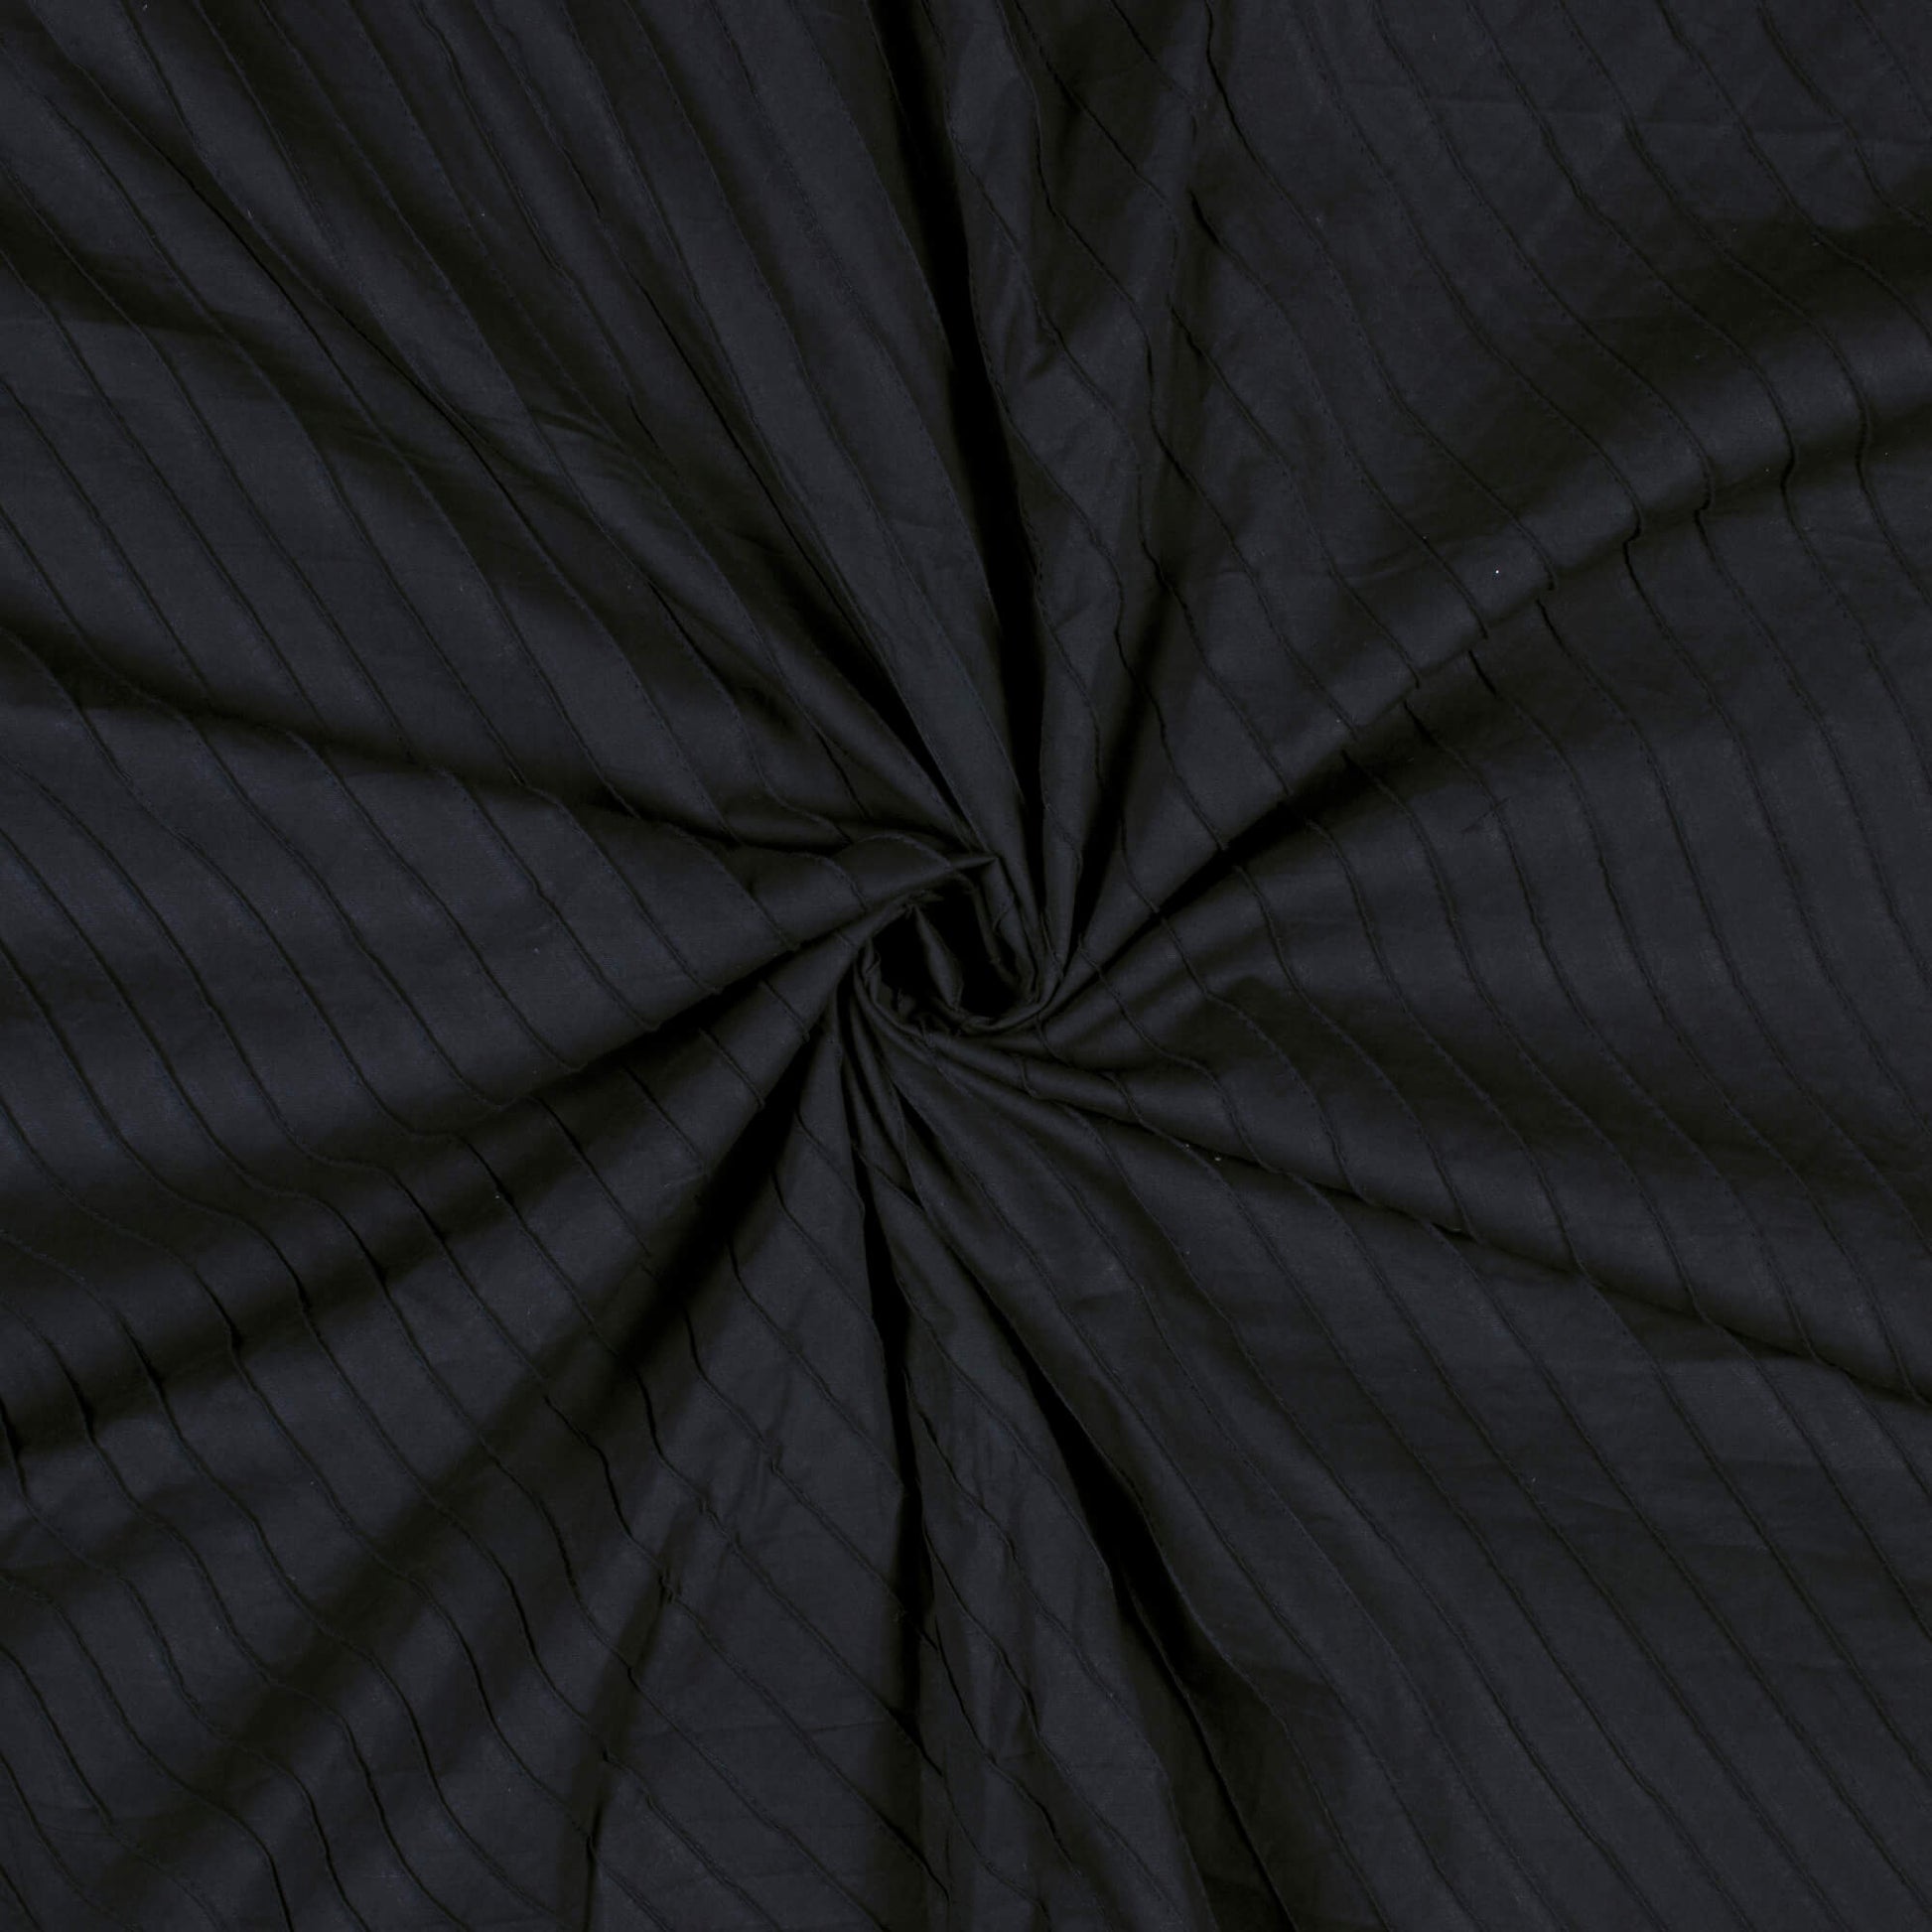 Black Stripes Pattern Pin-Tucks Plain Cotton Fabric - Fabcurate